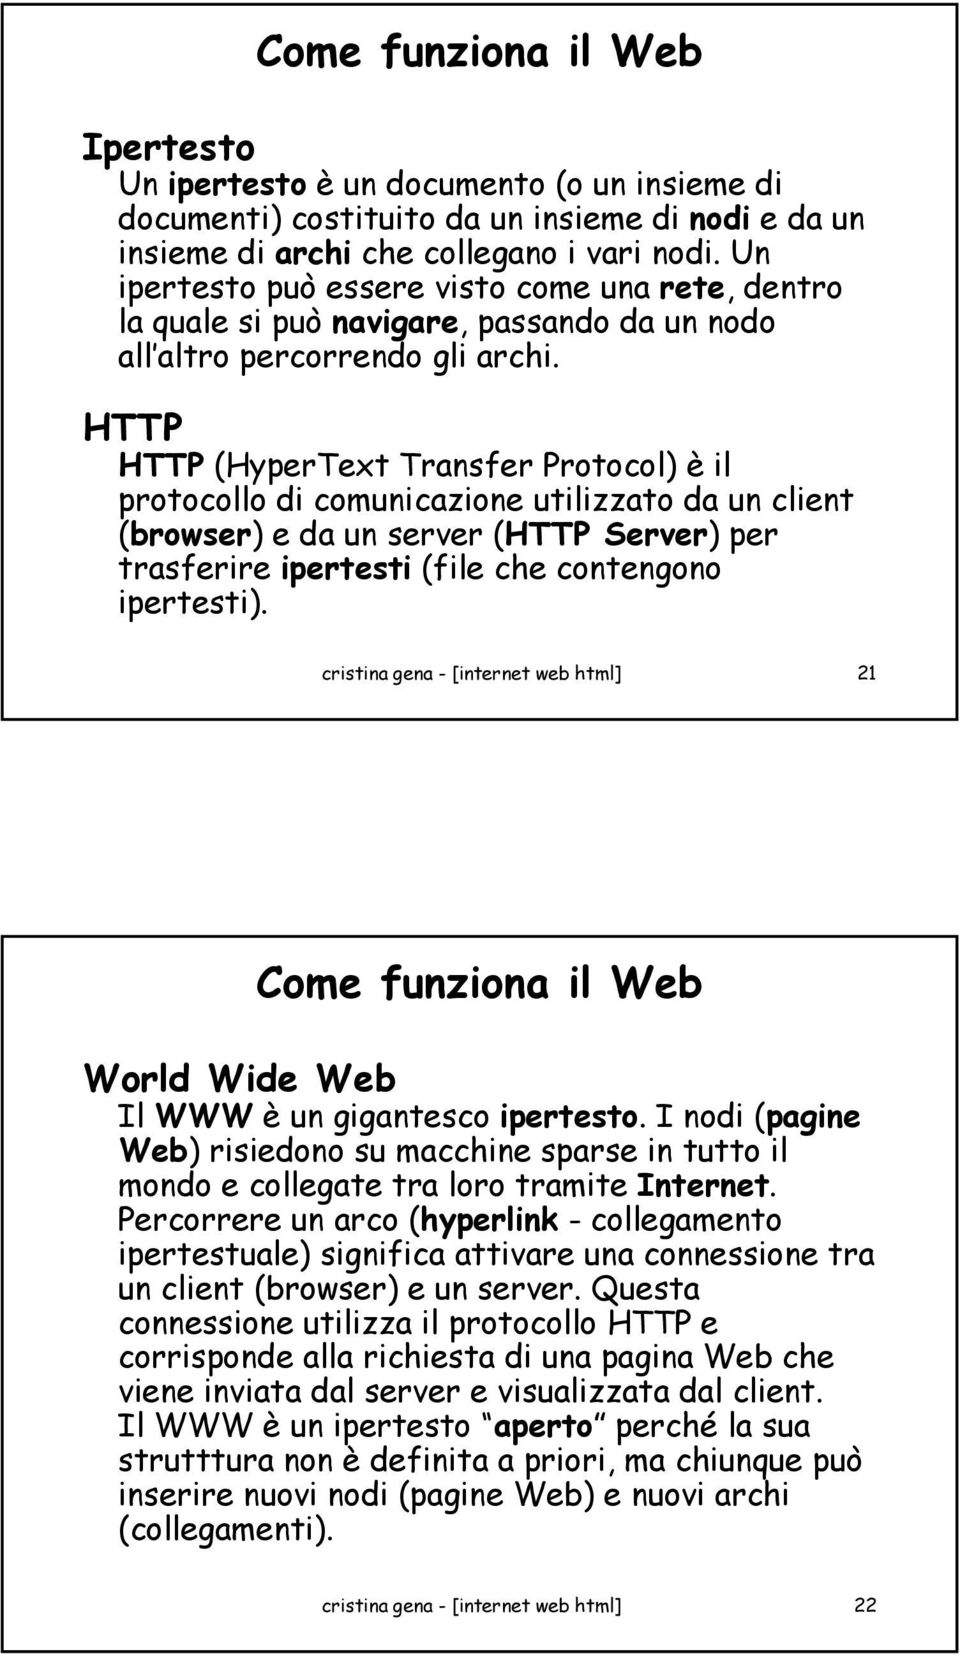 HTTP HTTP (HyperText Transfer Protocol) è il protocollo di comunicazione utilizzato da un client (browser) e da un server (HTTP Server) per trasferire ipertesti (file che contengono ipertesti).